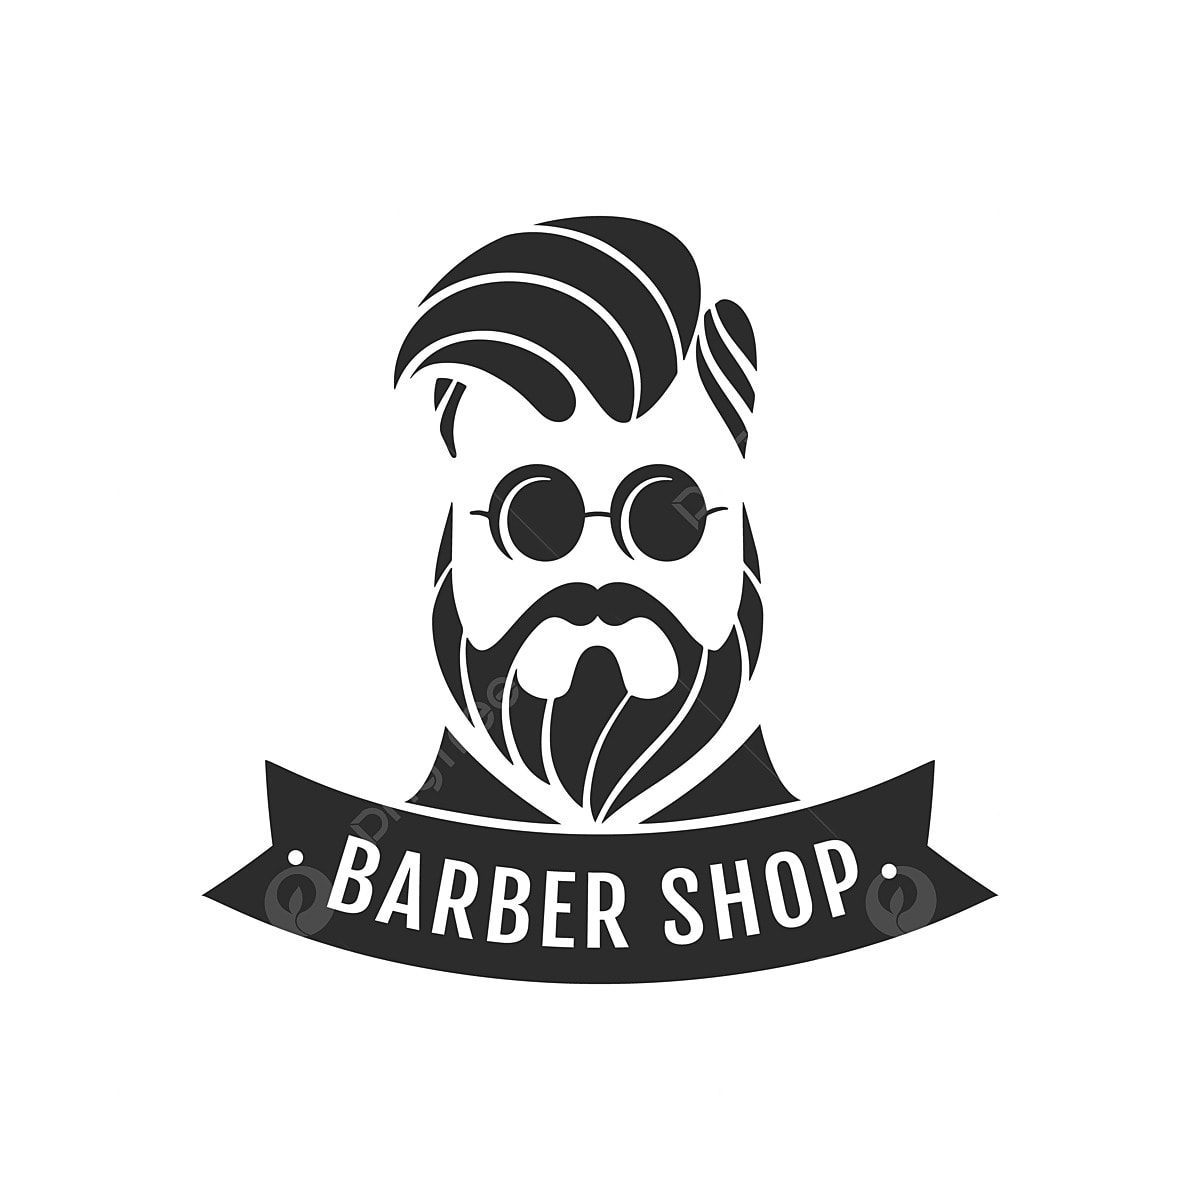 Barber Logo PNG Transparent Image Free Download